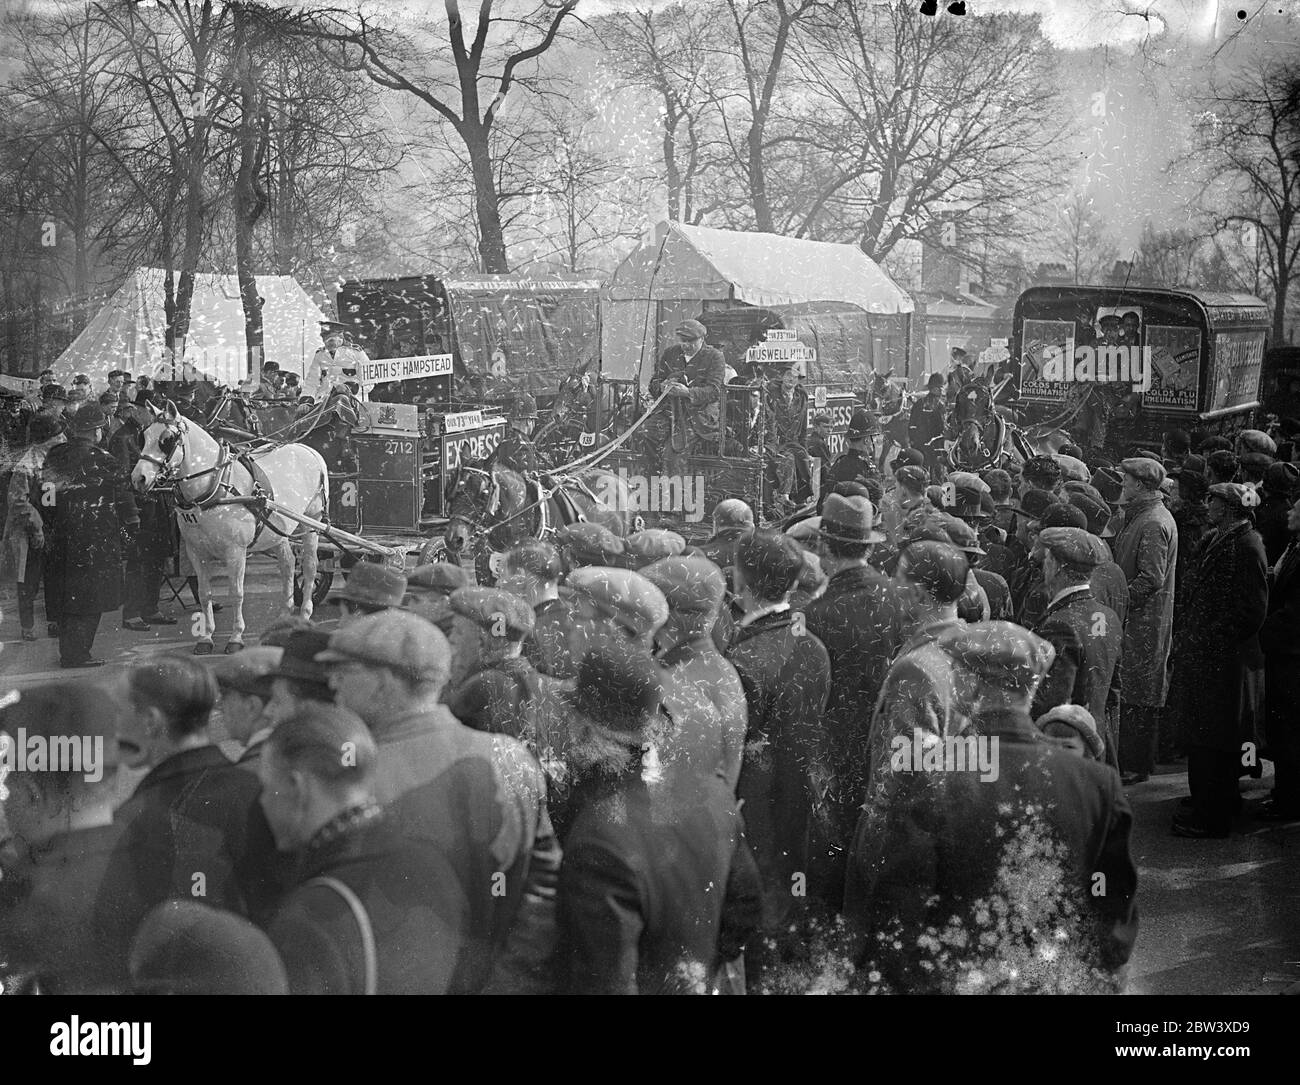 Cinq cent trente chevaux de minibus ont participé au Grand Parade des chevaux de minibus de Londres du lundi de Pâques dans le cercle intérieur, Regents Park. Photos : une vue générale du jury. 29 mars 1937 Banque D'Images